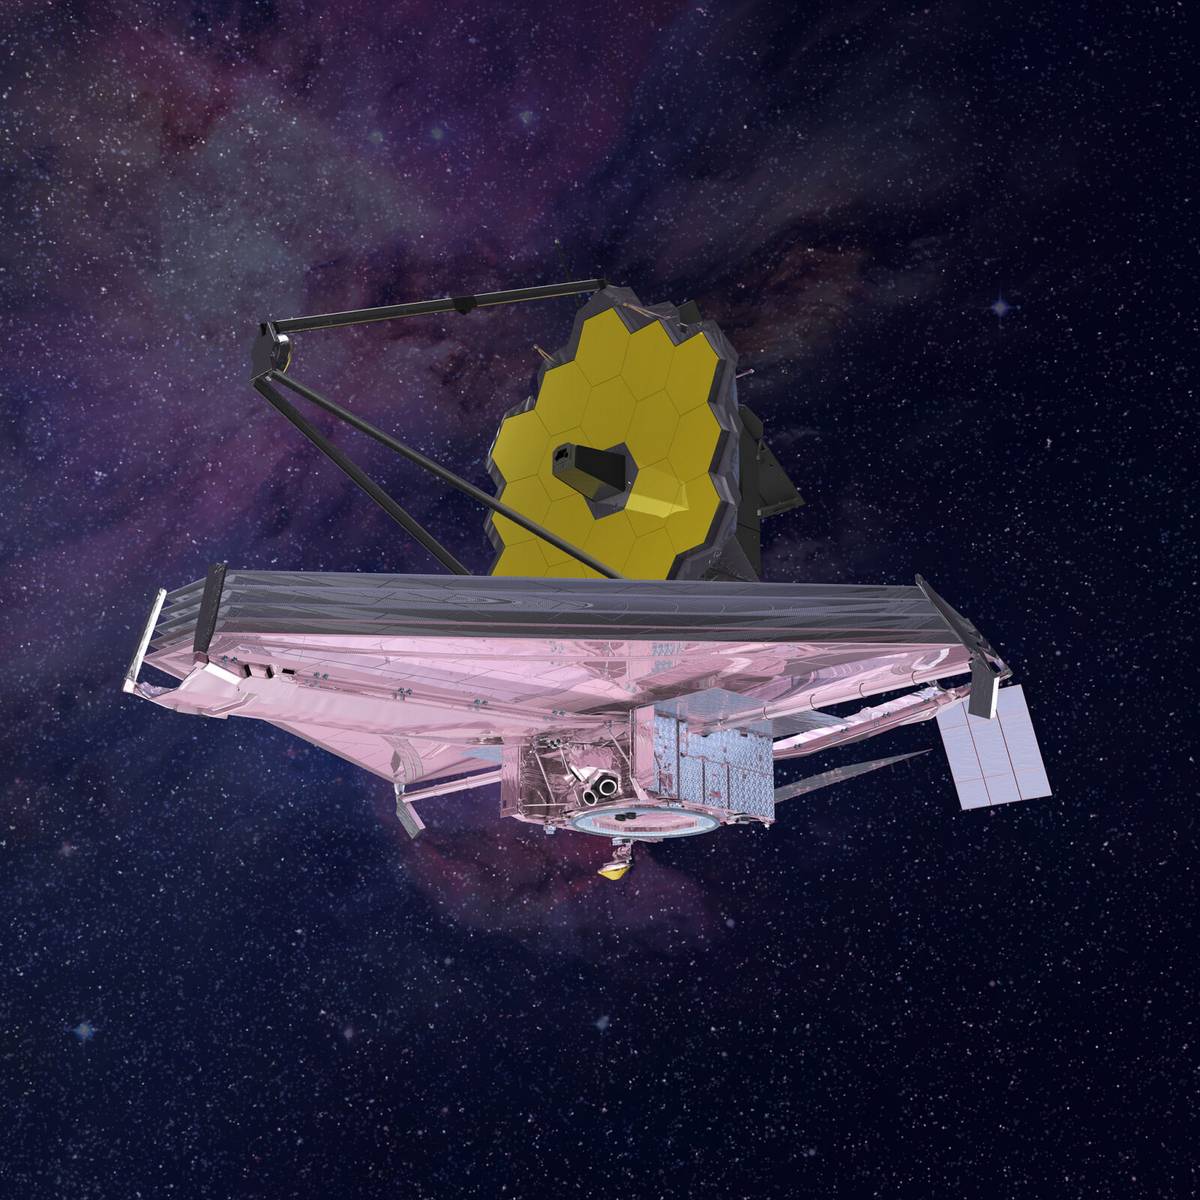 Webb następcą Teleskopu Hubble’a. Większy i pokryty złotem dostrzeże niewidoczne dotąd zakątki kosmosu